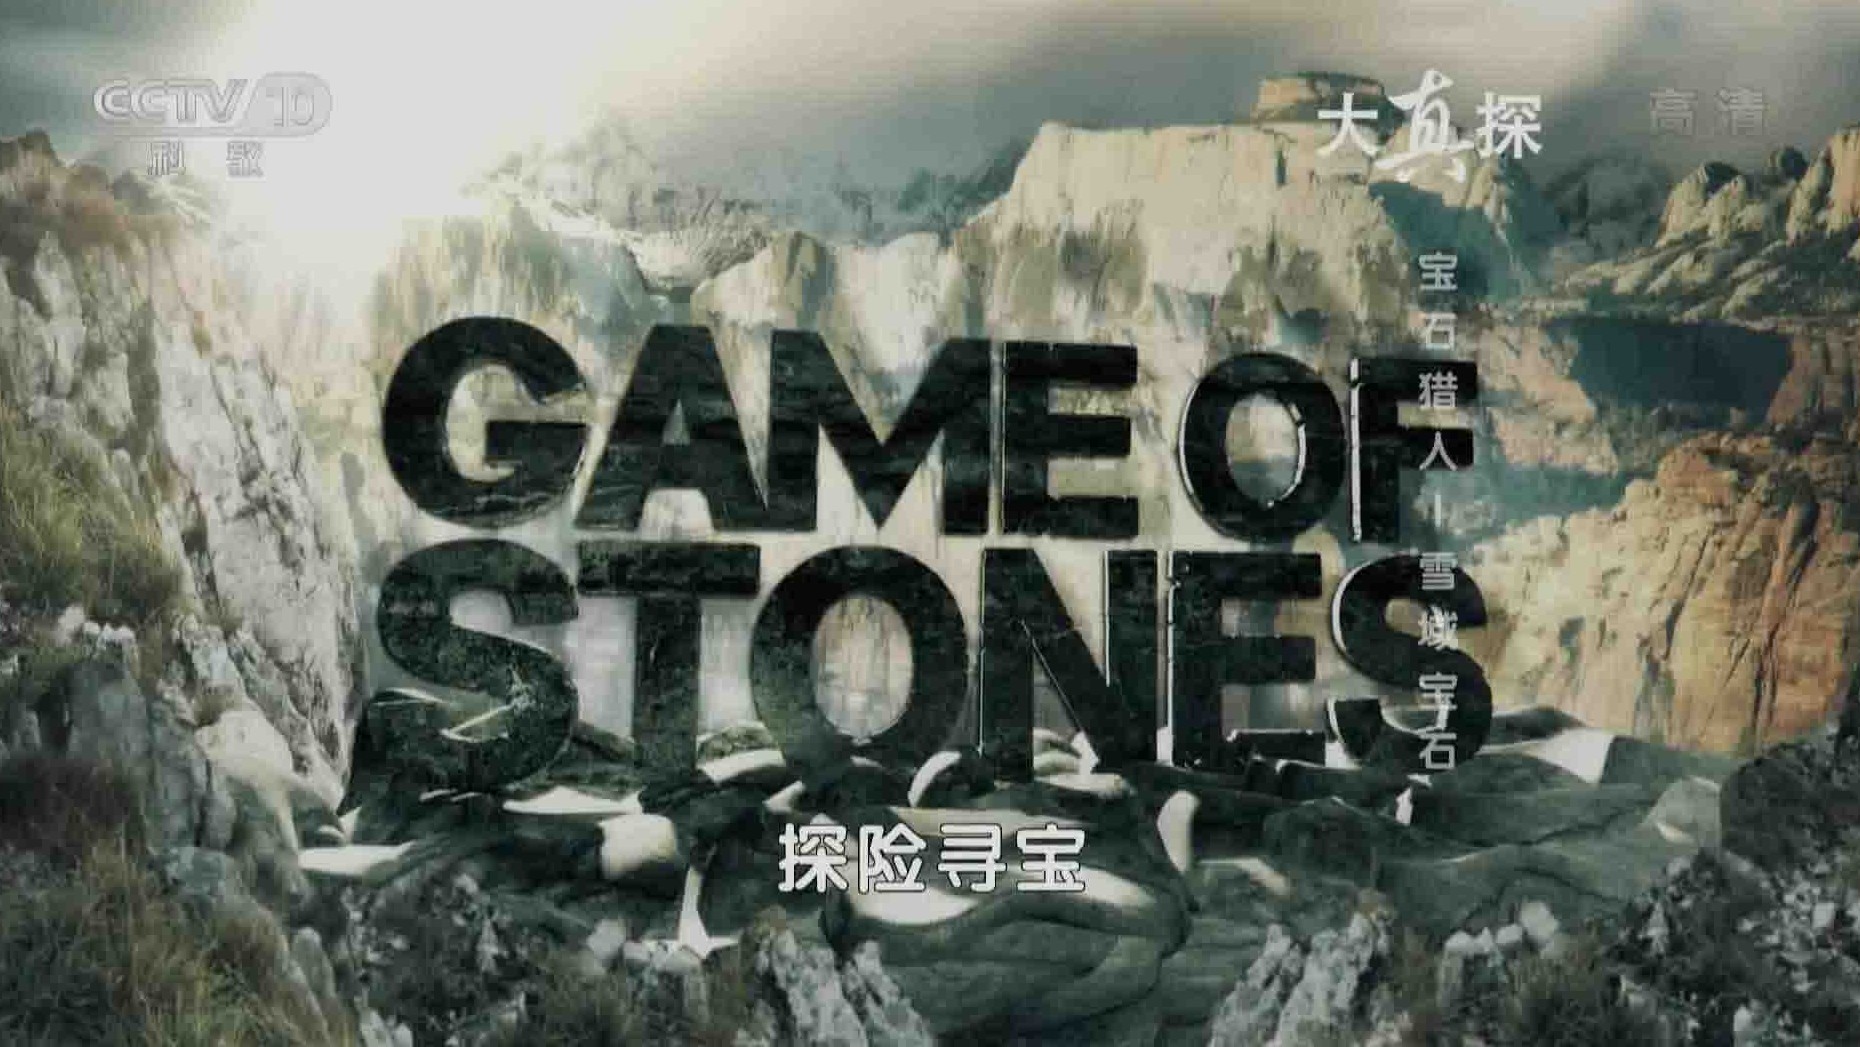 央视纪录片/探险寻宝纪录片《宝石猎人 Game Of Stones》全6集 国语中字 1080P高清网盘下载